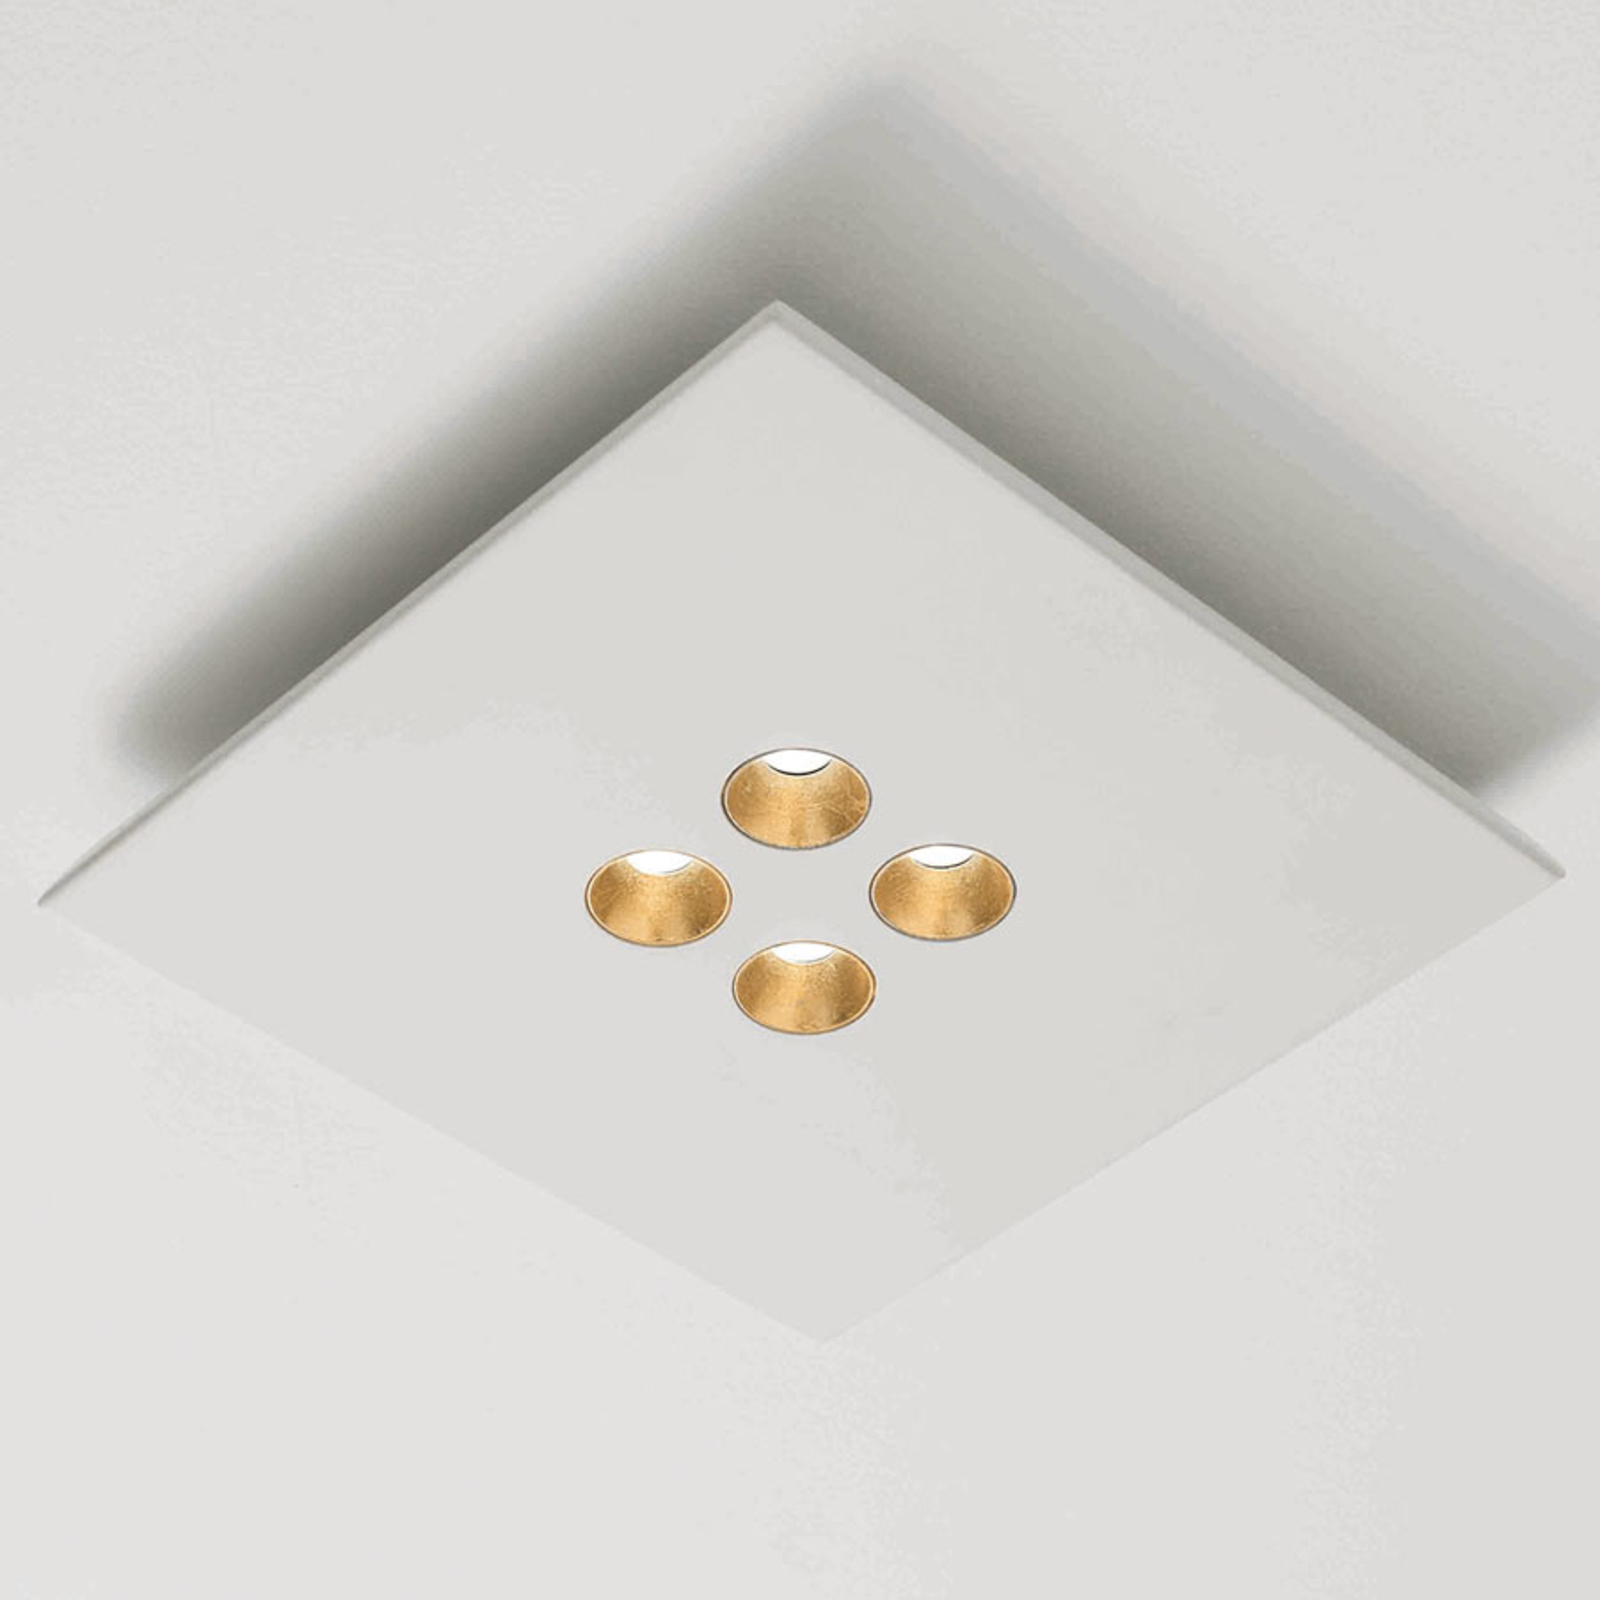 "ICONE Confort" - LED lubinis šviestuvas, baltai auksinis